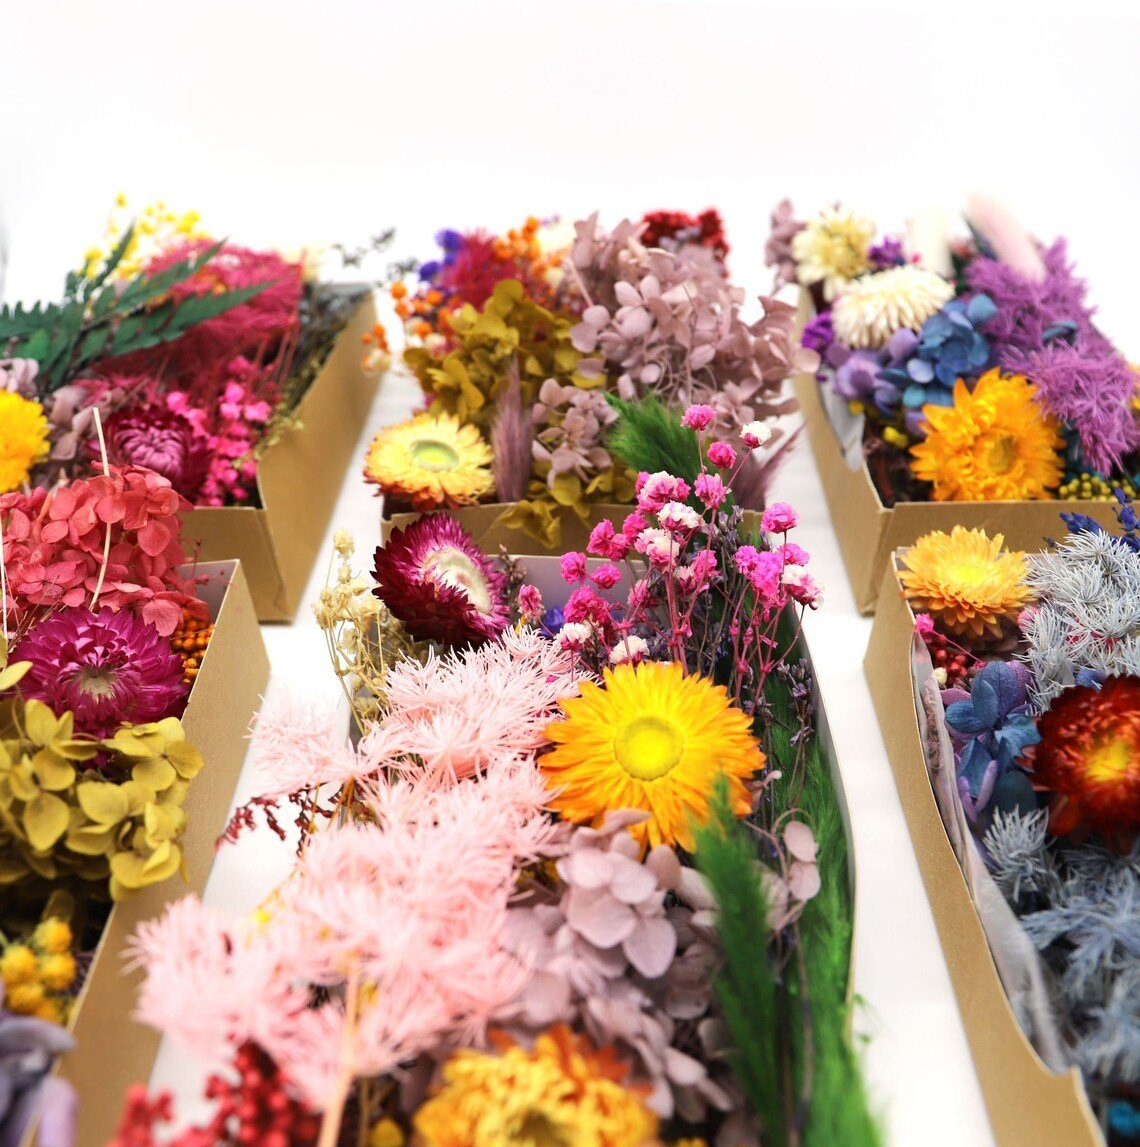 Trockenblume Box mit getrockneten Blumen Kunstharz.Art Mix, Zufälliger 